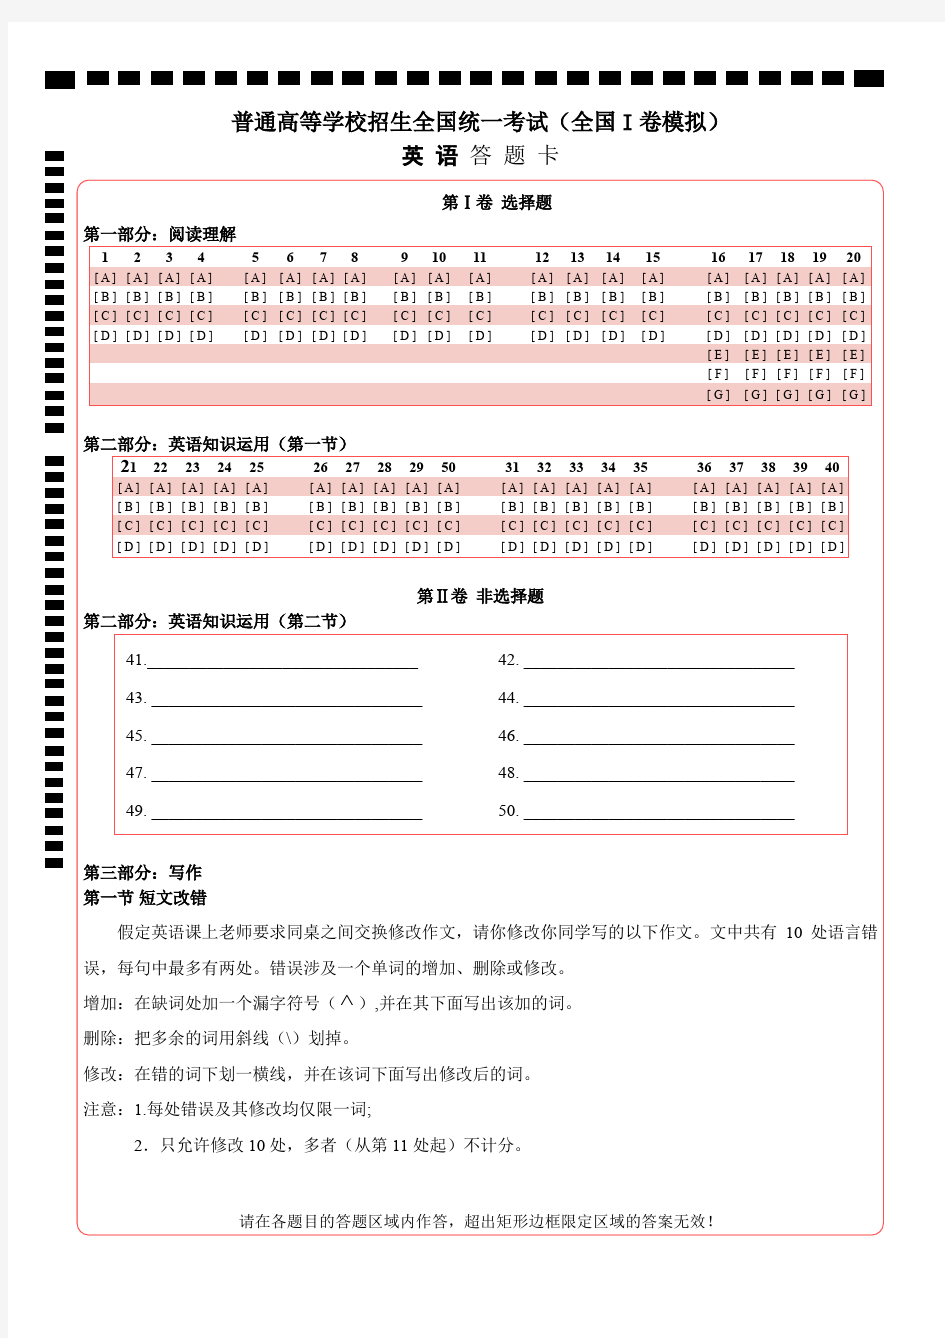 (完整word)【A4精排打印版】新课标高考英语答题卡模板